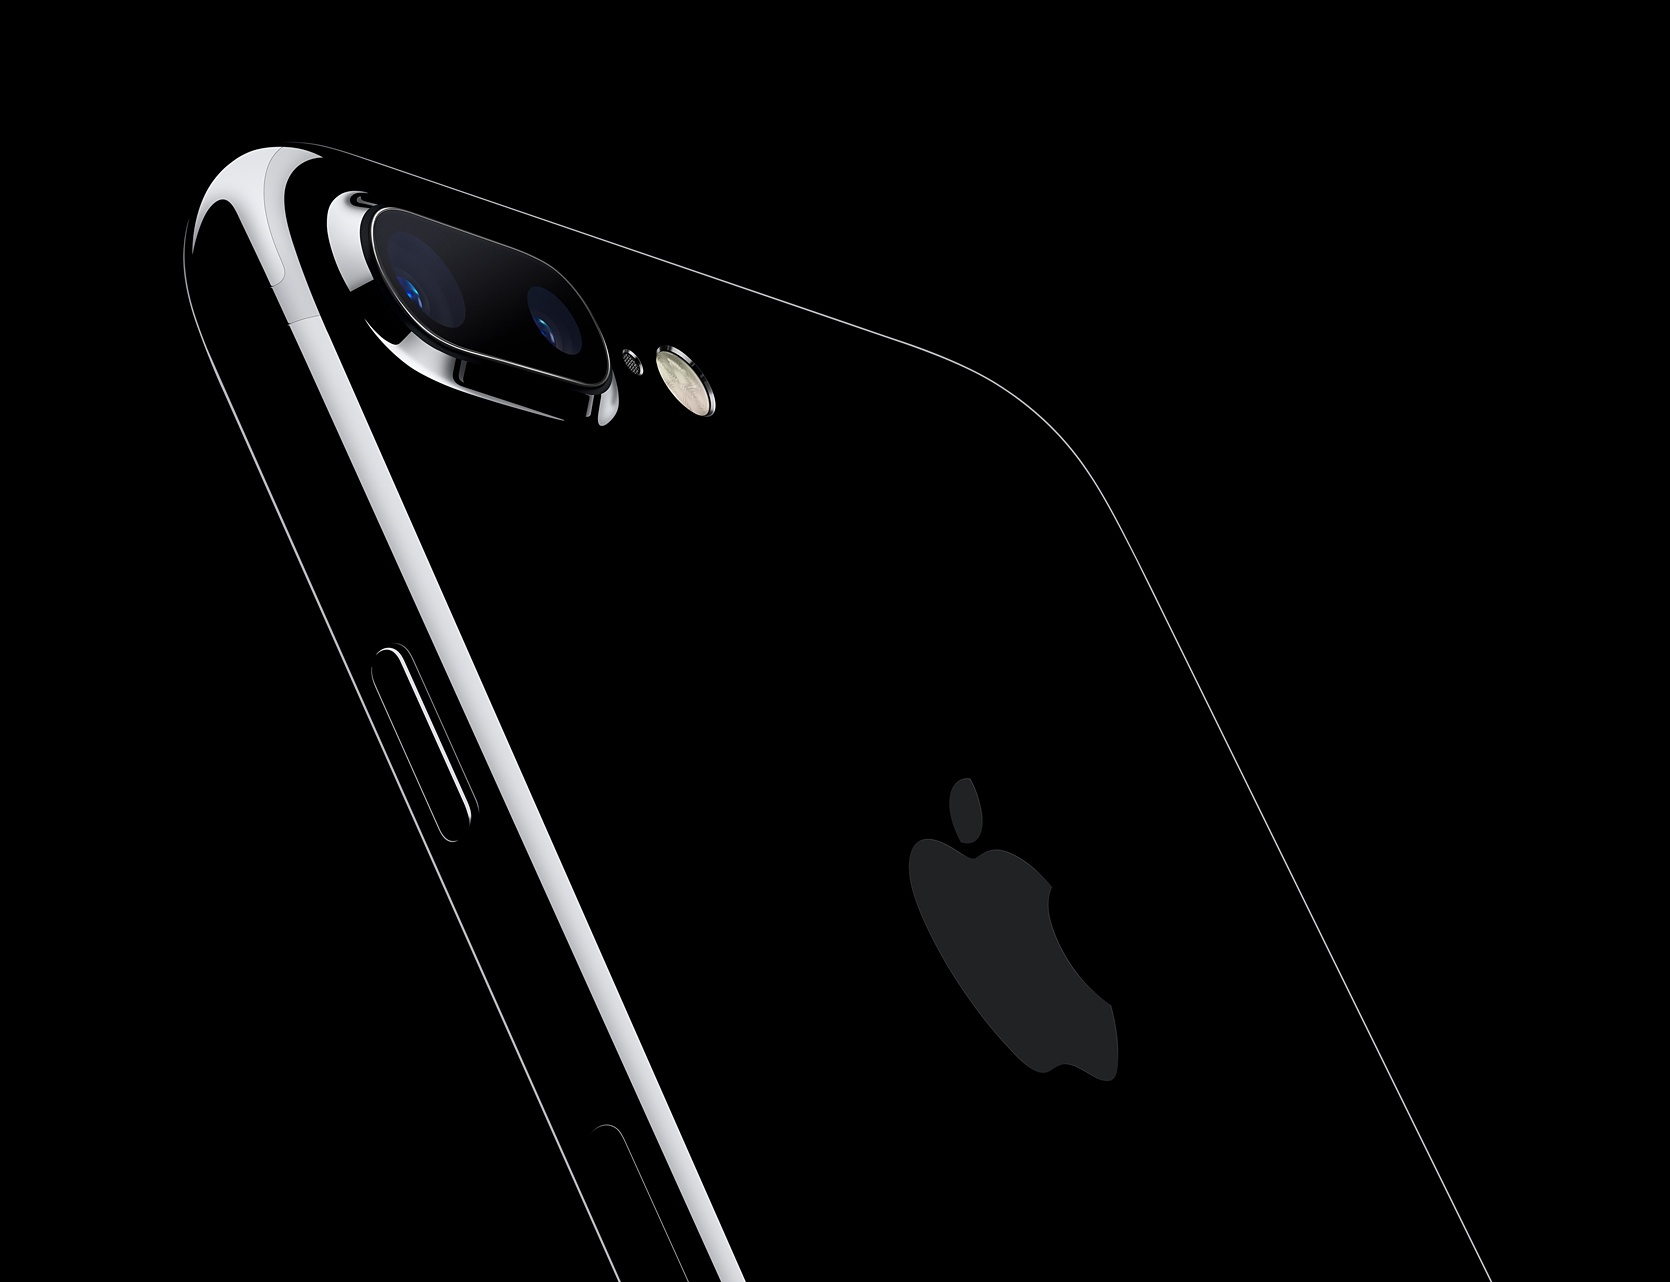 APPLE iPhone 7 Plus 256GB Czarny Smartfon - ceny i opinie w Media Expert